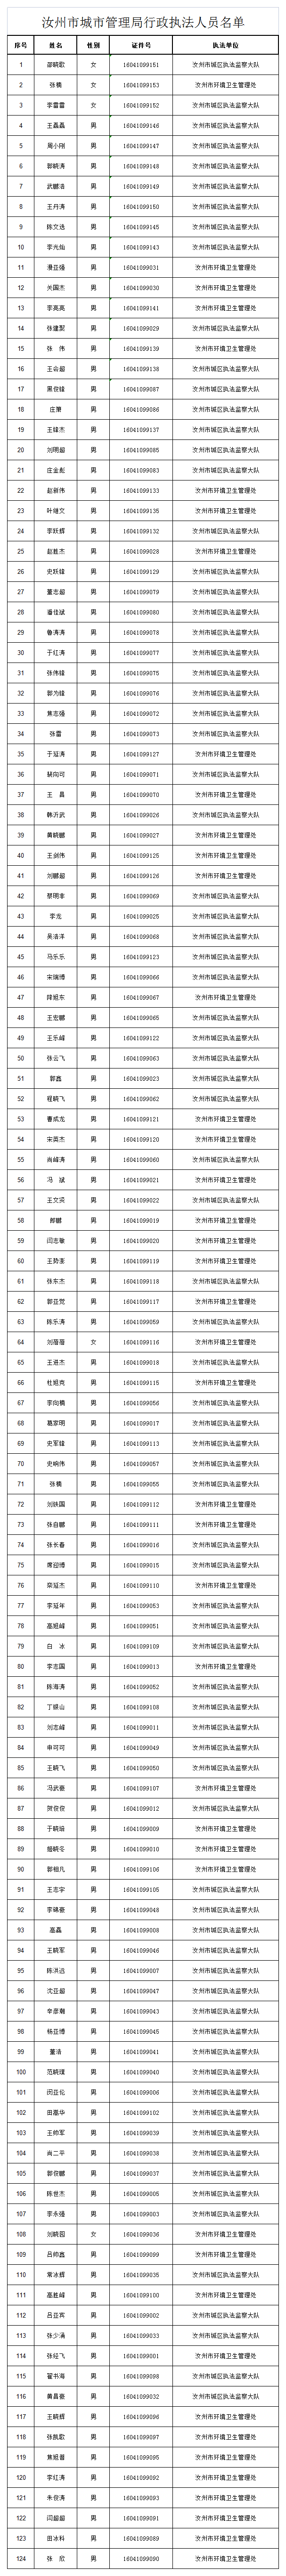 汝州市城市管理局行政执法人员名单.png